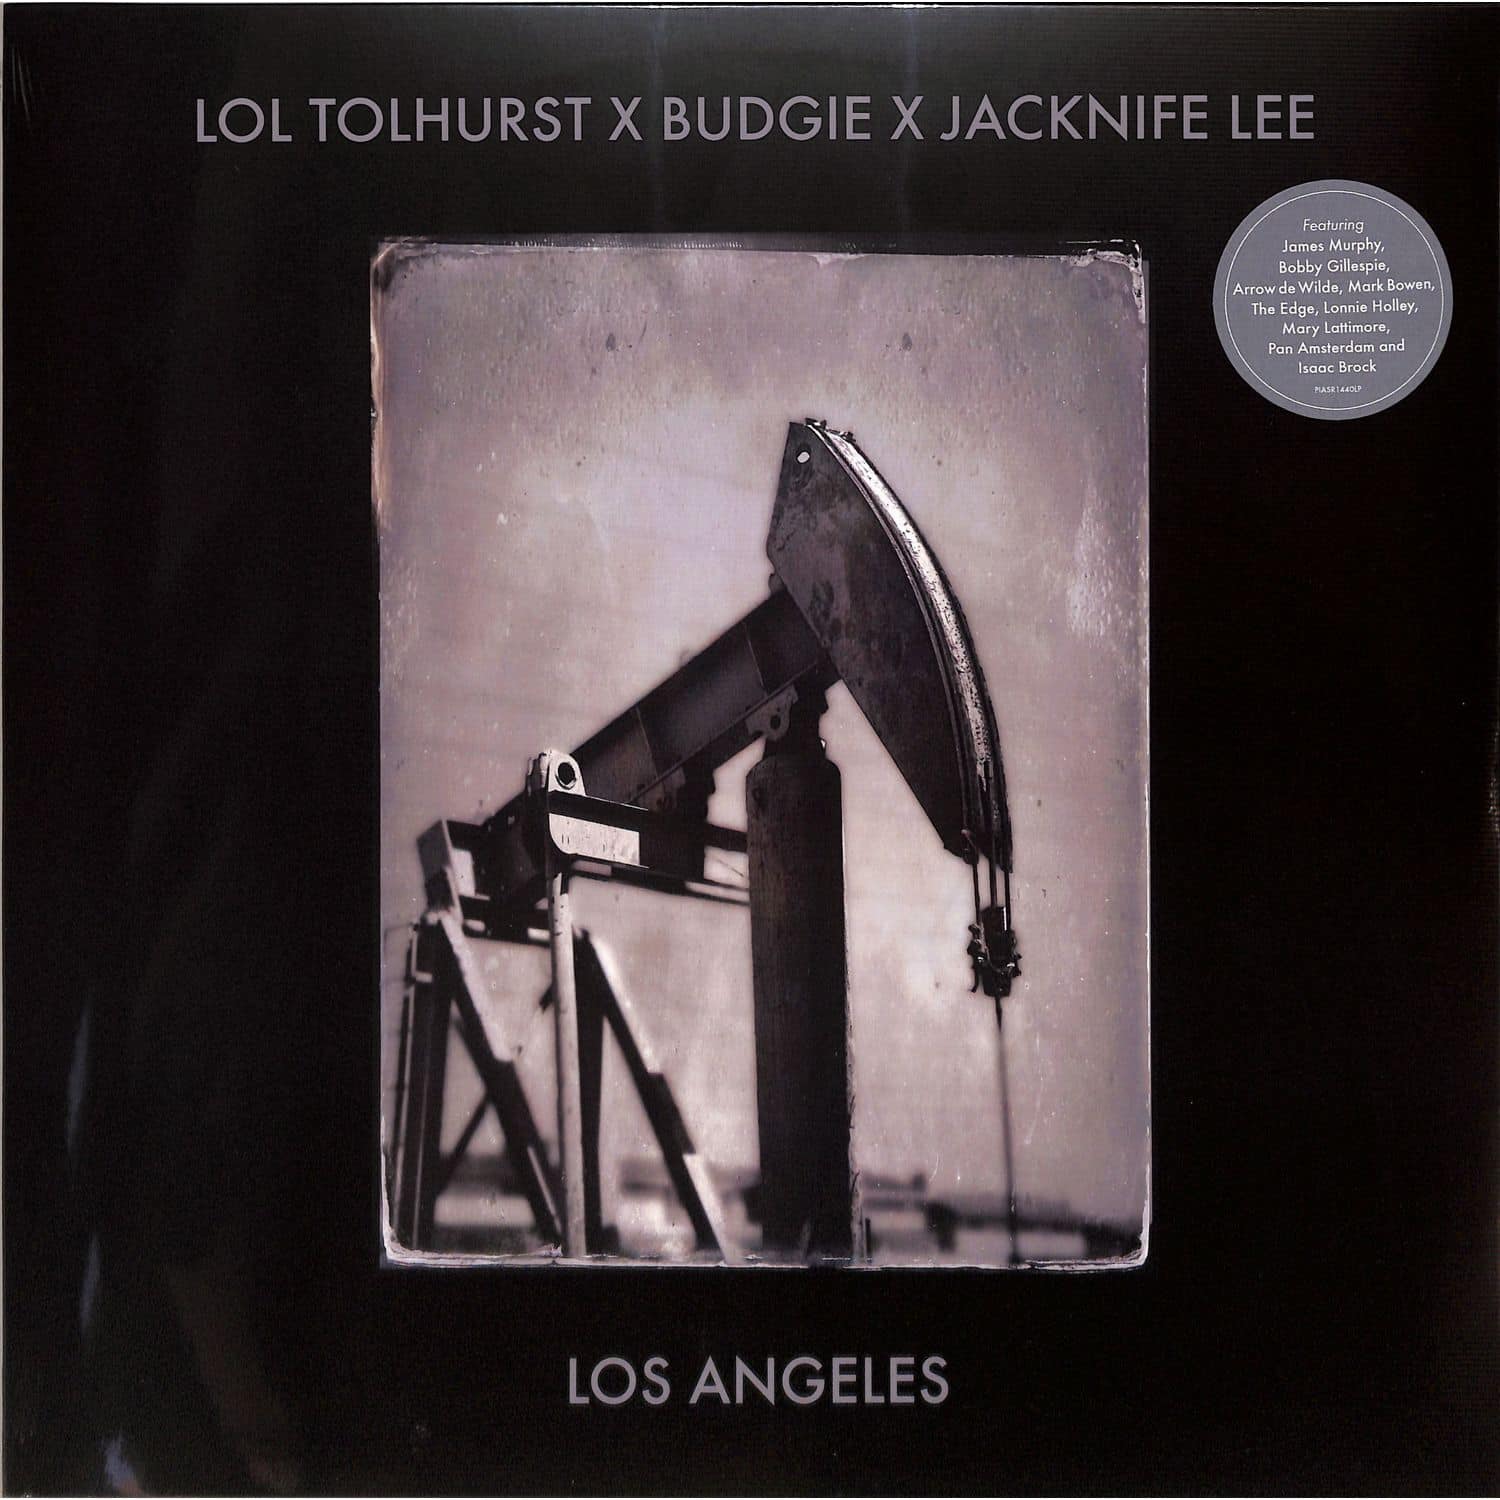 Lol Tolhurst & Budgie & Jacknife Lee - LOS ANGELES 